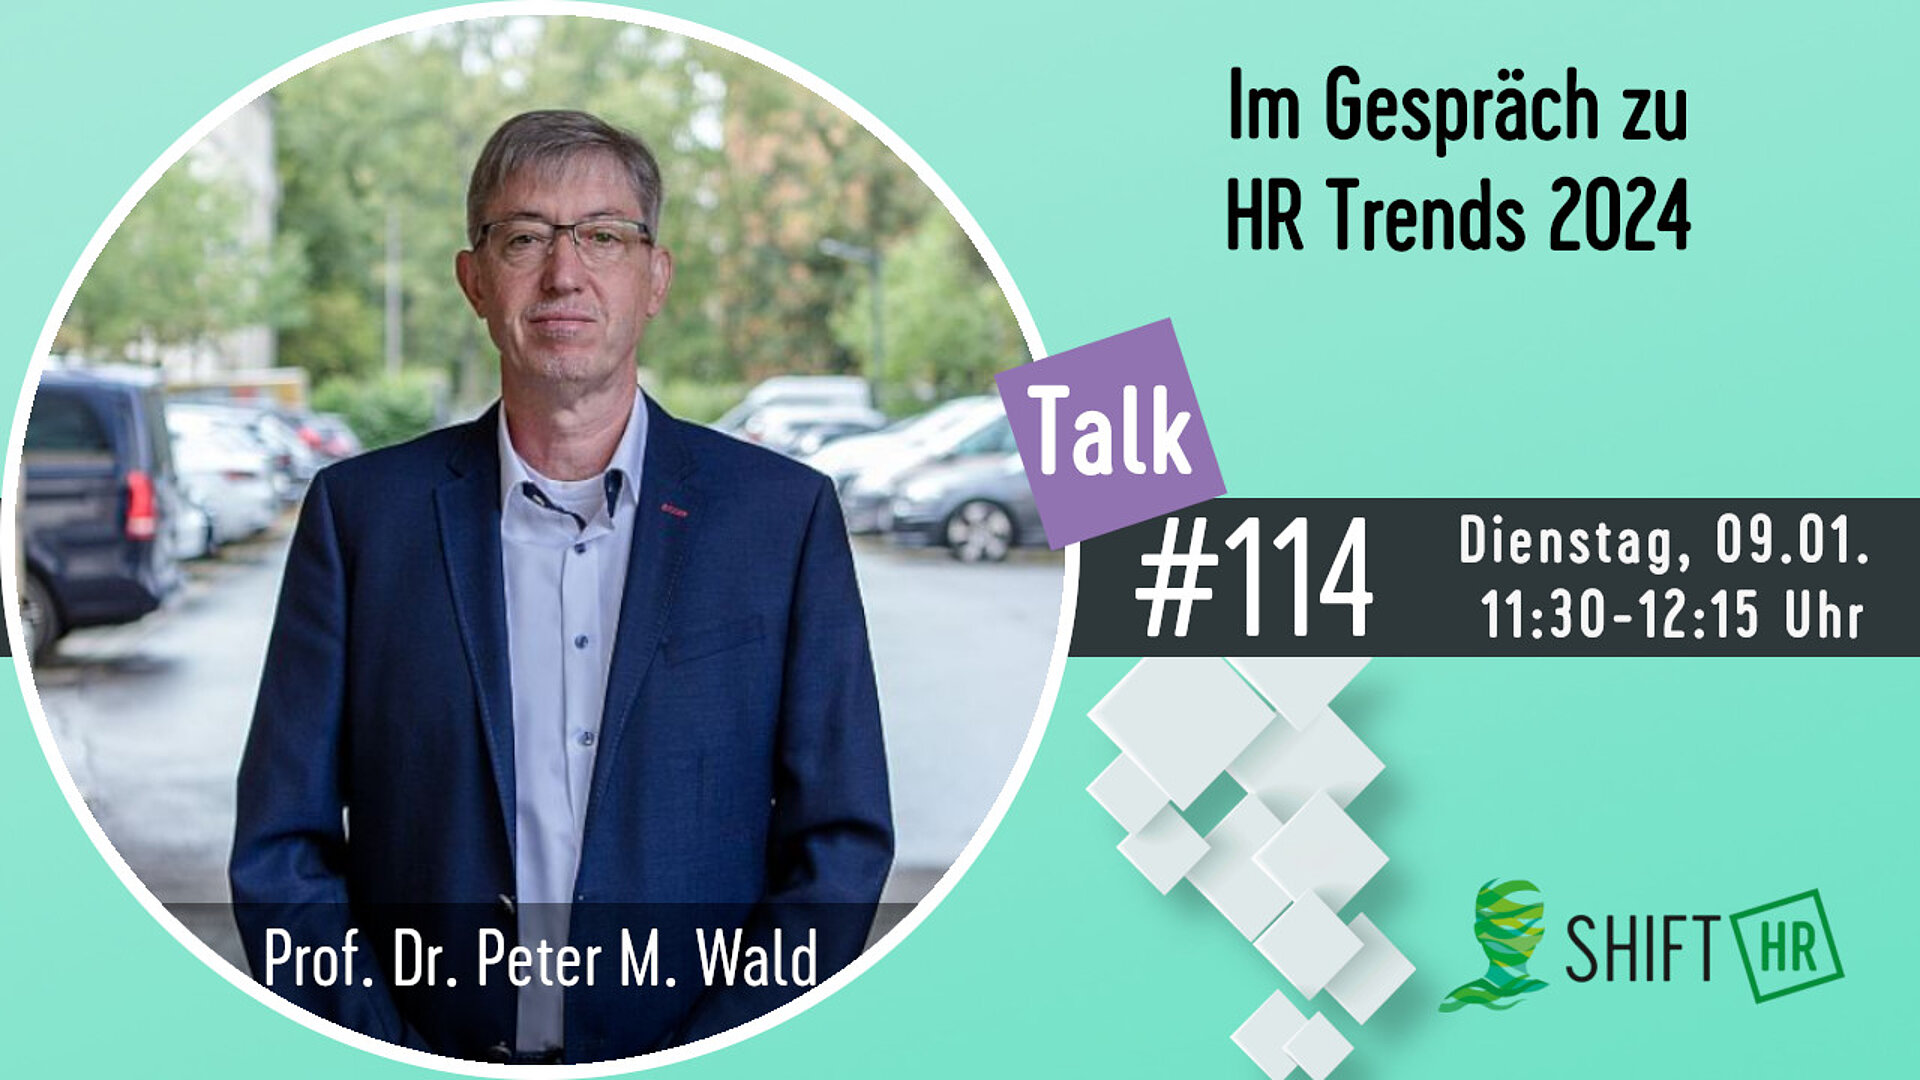 Im Gespräch mit Prof. Dr. Peter Wald zu den HR Trends 2024